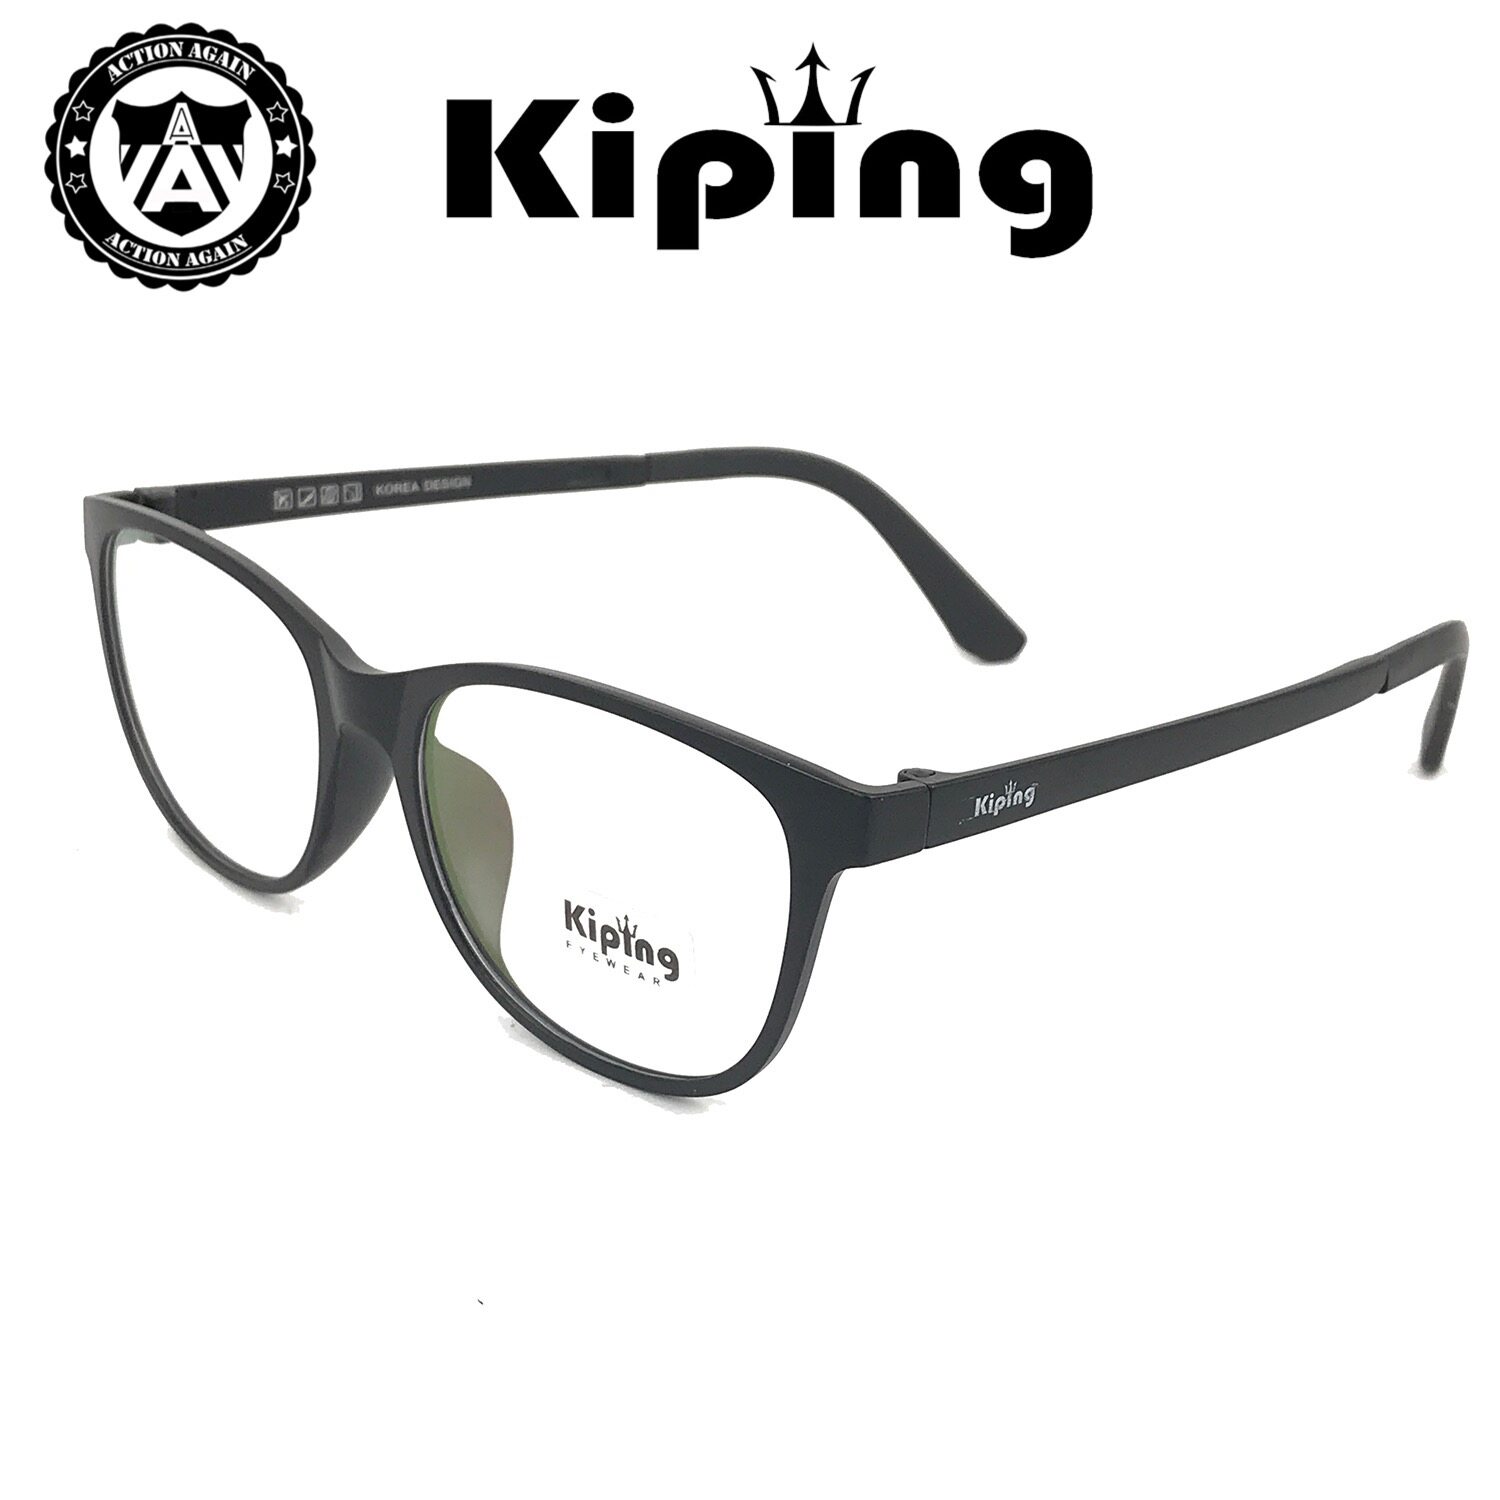 KIPING 99025 แว่นสายตา แว่นกรองแสงฟ้า แว่นตากรองแสง แฟชั่นล่าสุด แว่นตา แฟชั่น เต็มเฟรม แว่นตาราคาถูก